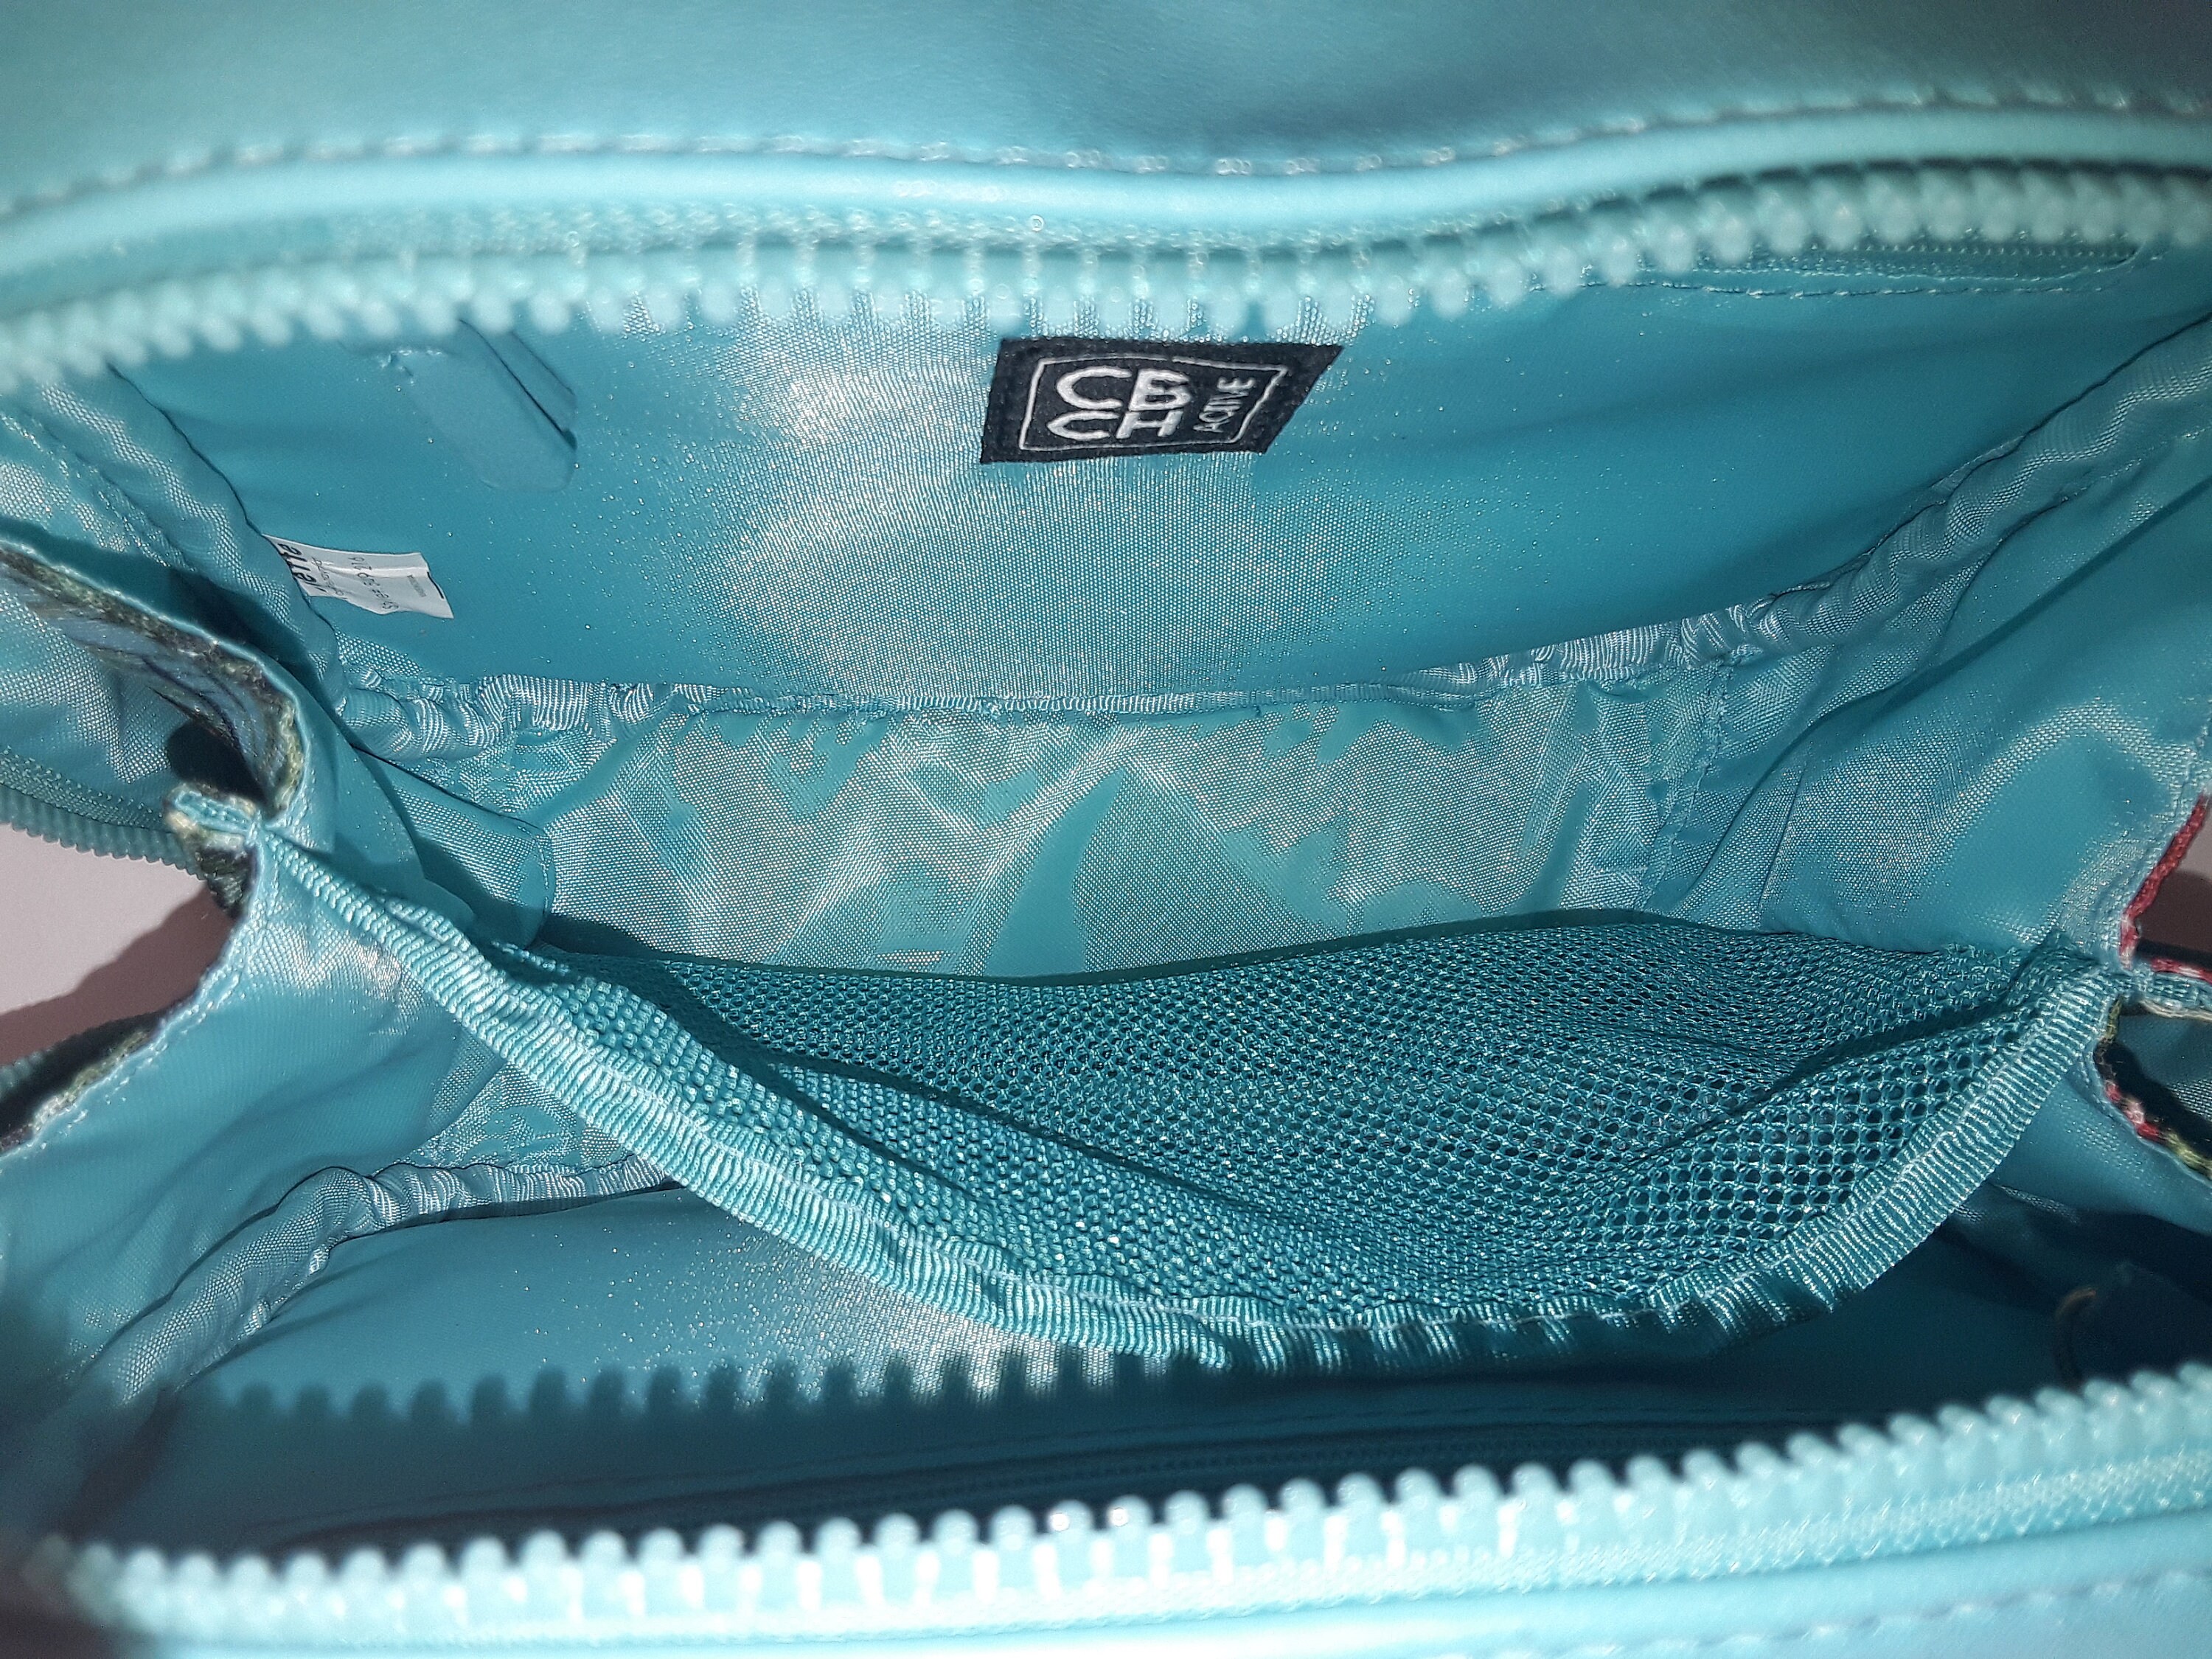 کیف دوشی استرج مدل سونیا کد 0228 | Sonia style shoulder bag - کیفــــــ مد